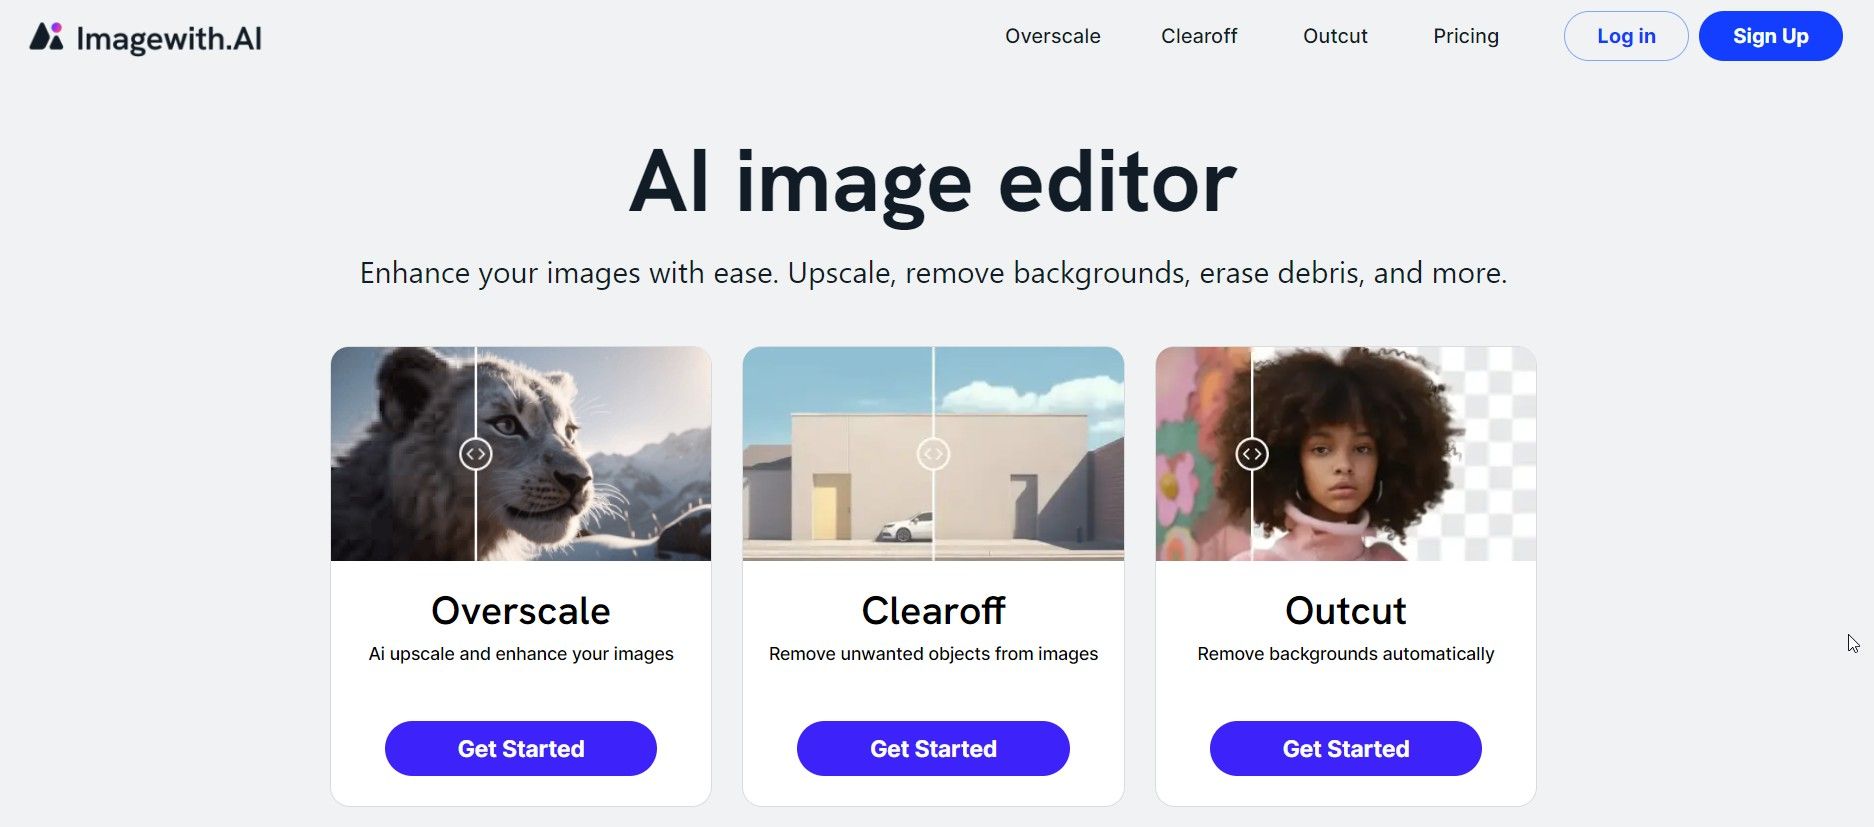 Imagewith.AI,the AI Image Editor